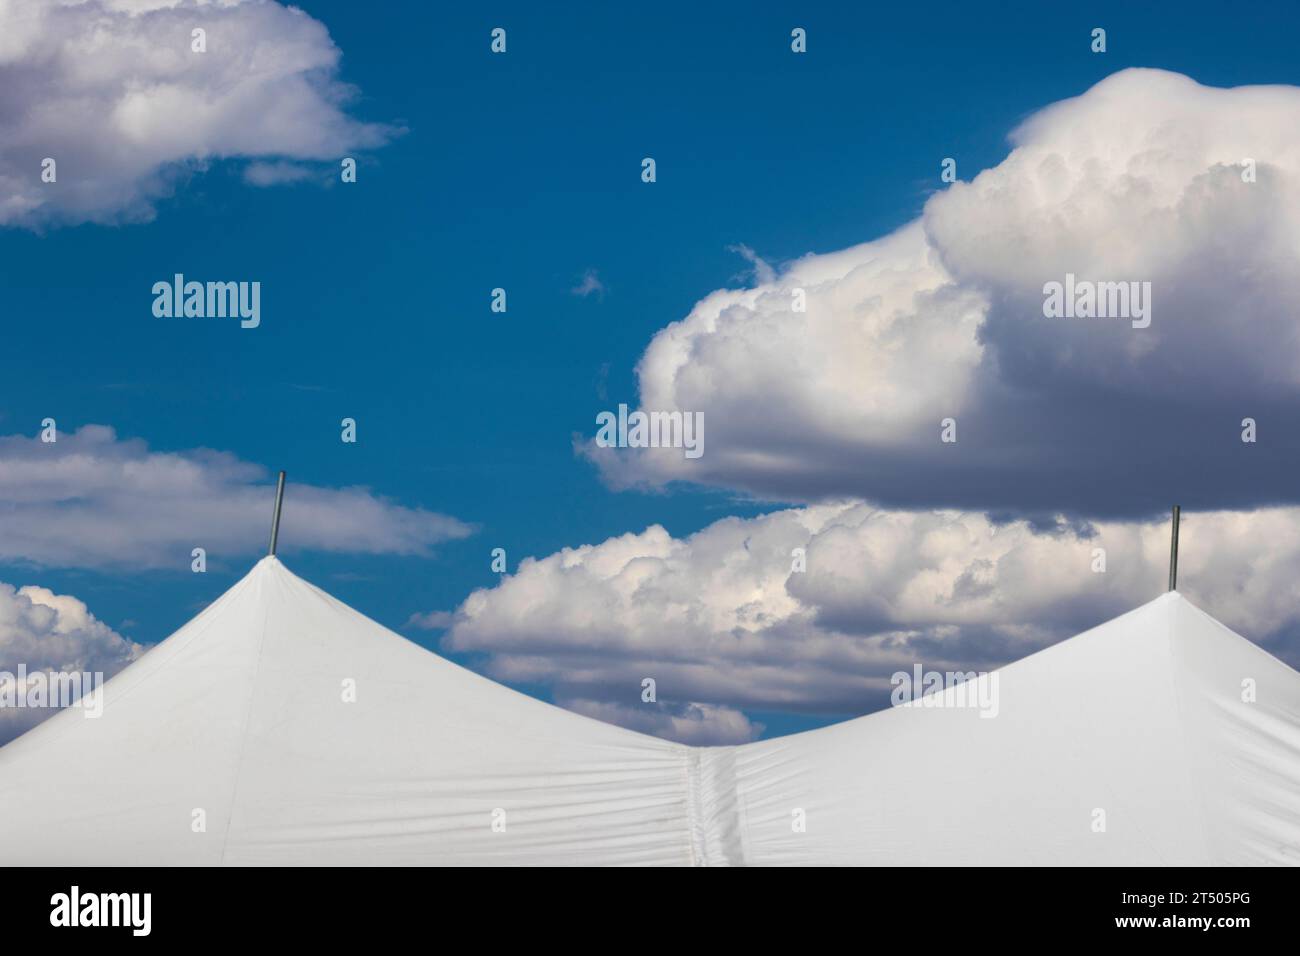 Weiße flauschige Wolken in hellblauem Himmel hoover über den Spitzen eines weißen Zeltes. Stockfoto